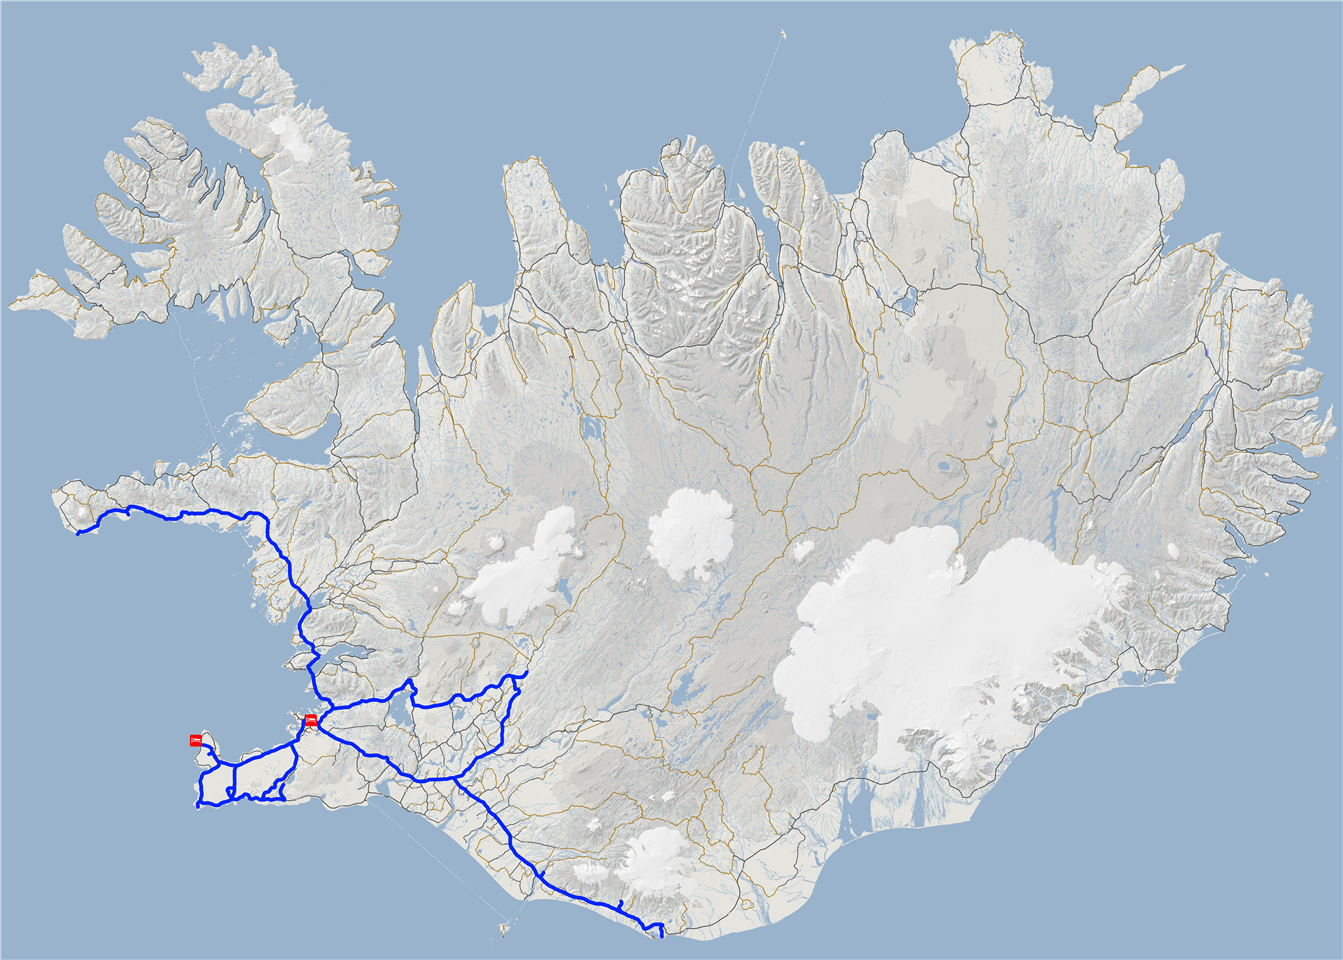 Islande - Itinéraire 6  jours